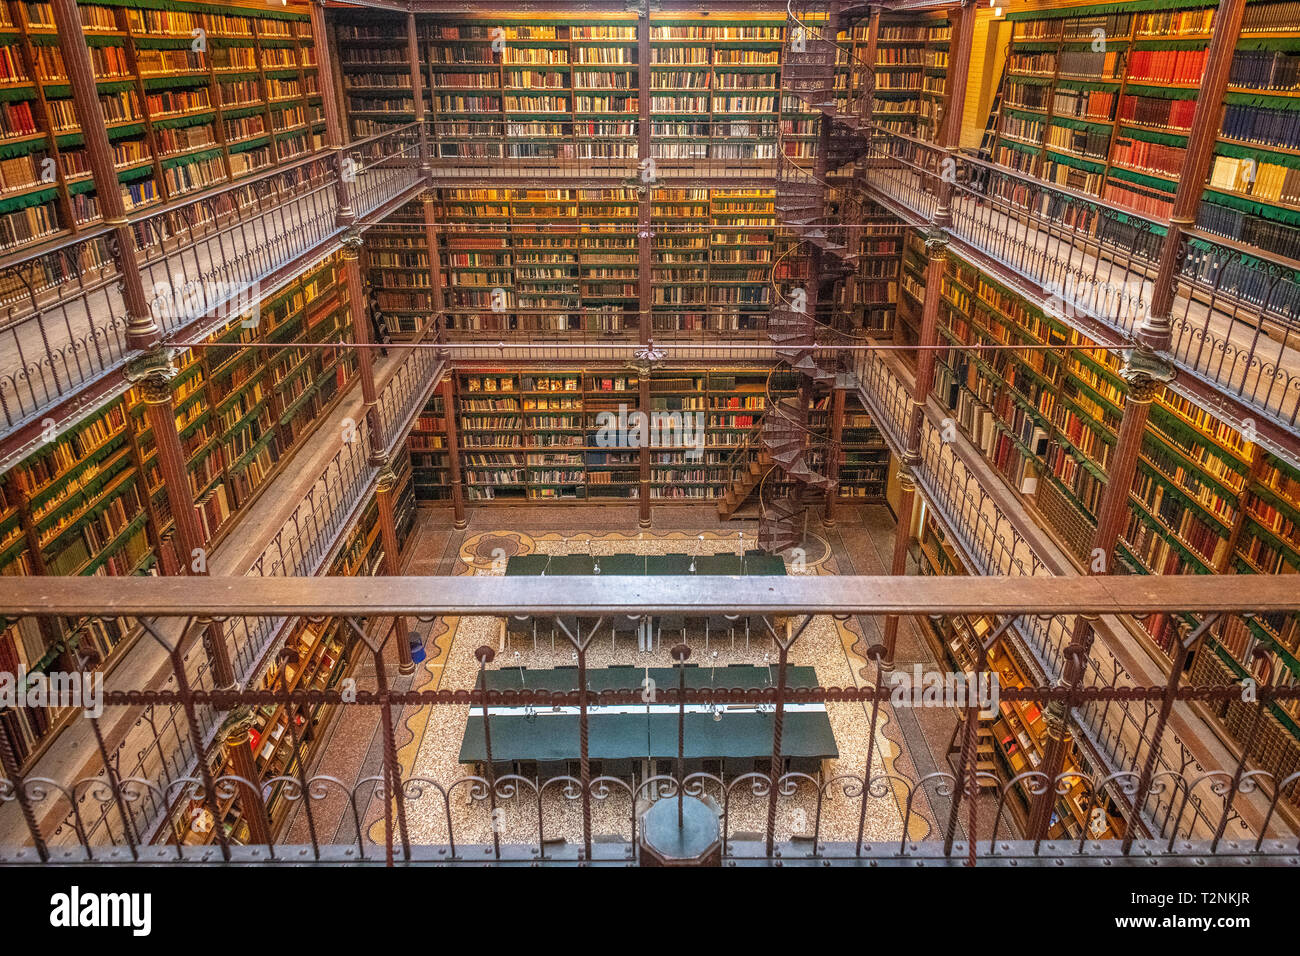 Les livres sont empilés au Rijksmuseum Research Library la plus grande bibliothèque de recherche en histoire de l'art public dans les Pays-Bas. Amsterdam, Pays-Bas Banque D'Images